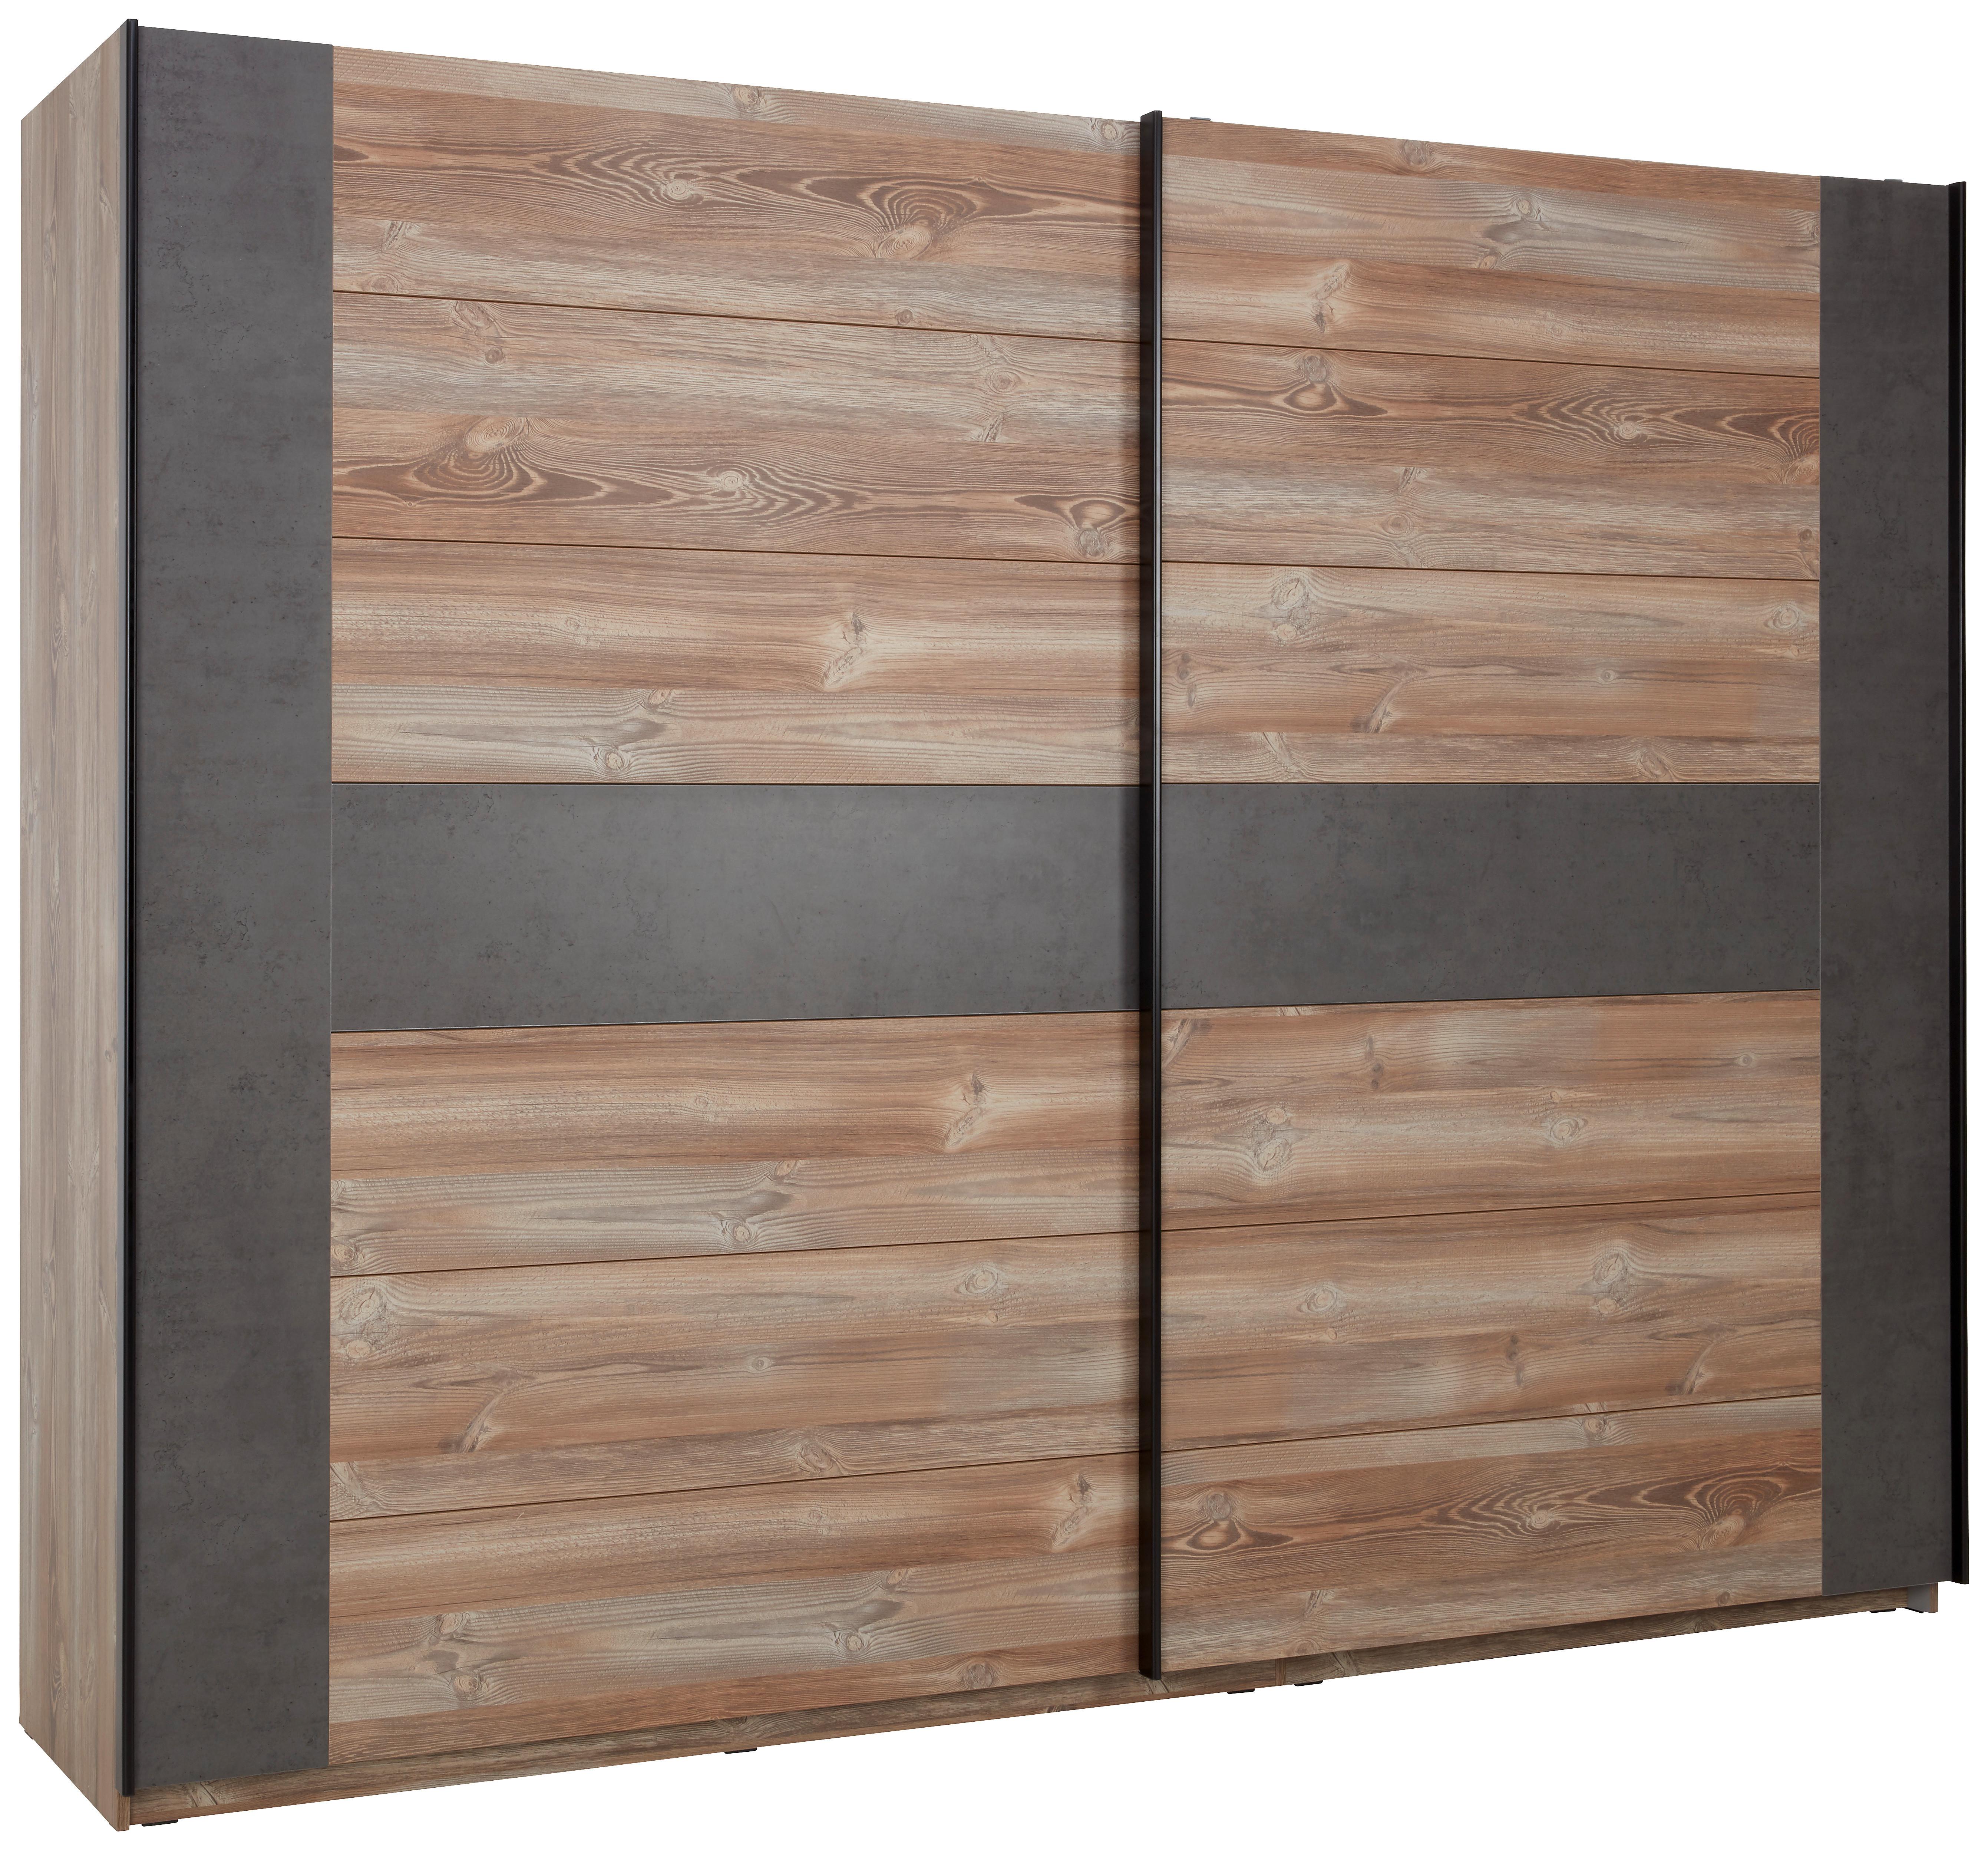 Šatní Skříň S Posuvnými Dveřmi Chanton, 270x210 Cm - barvy borovice/šedá, Lifestyle, kov/kompozitní dřevo (270/210/62cm) - Based